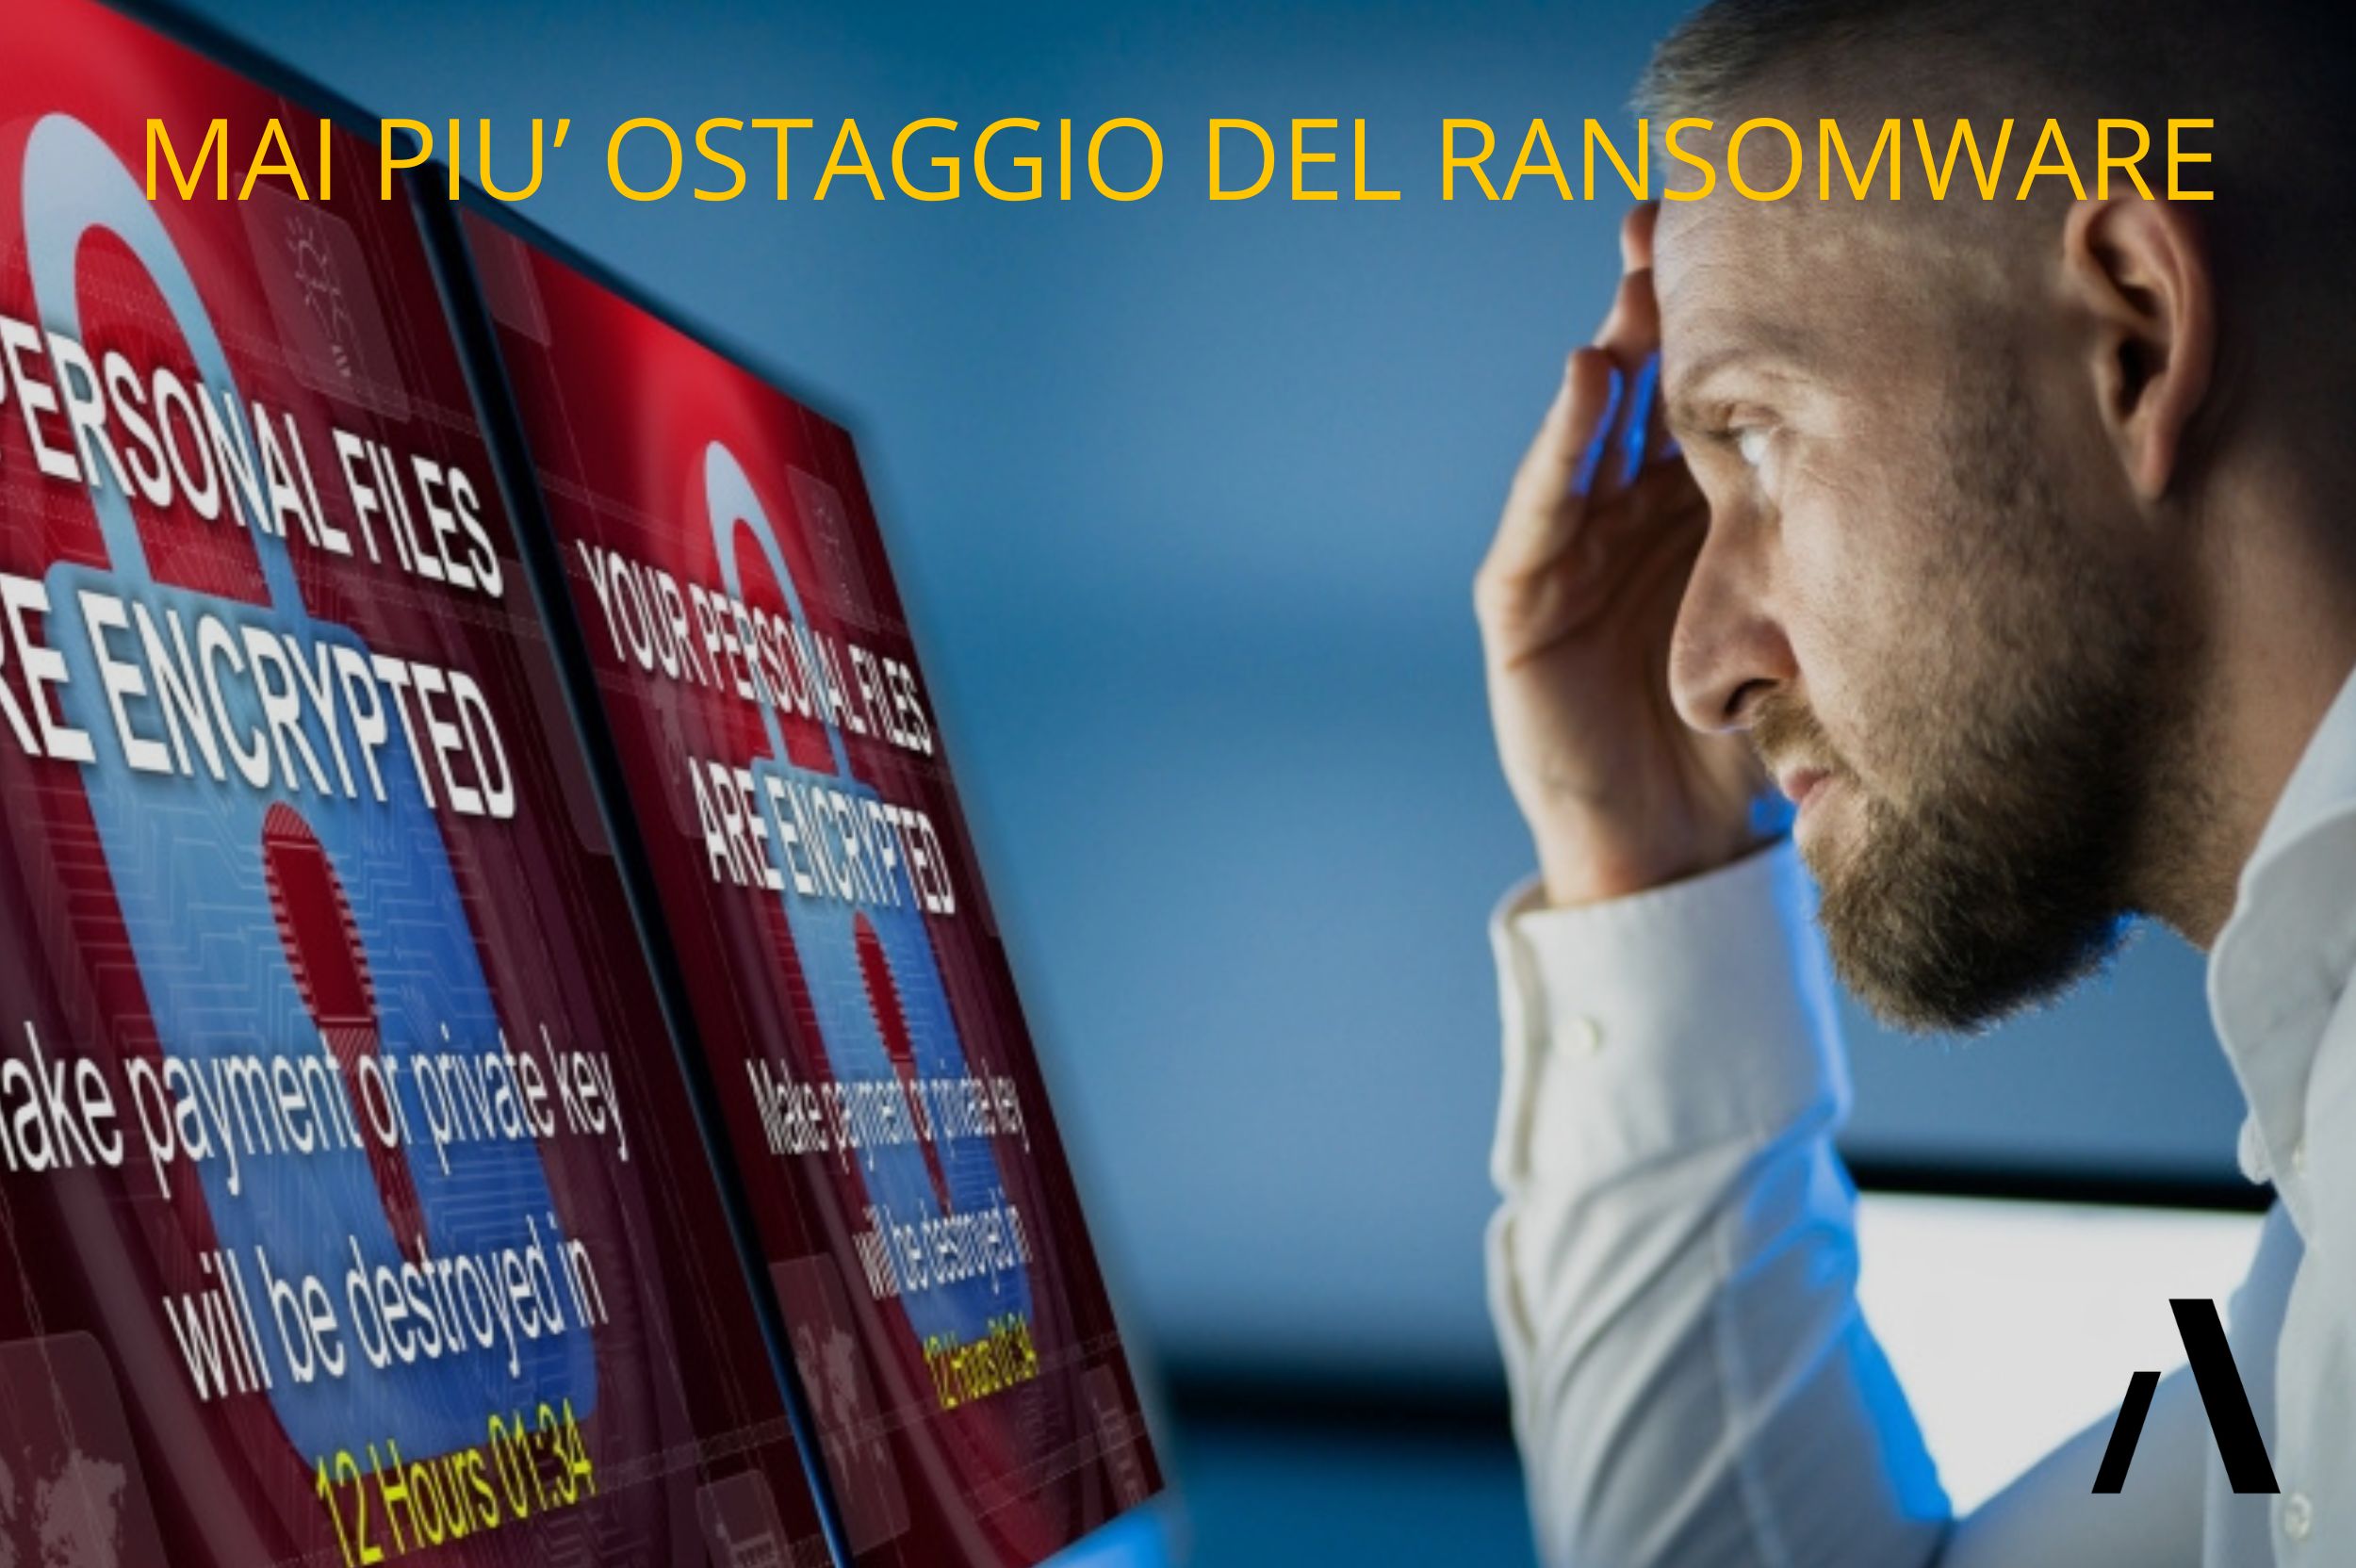 Mai più ostaggio del ransomware: primo evento a Torino